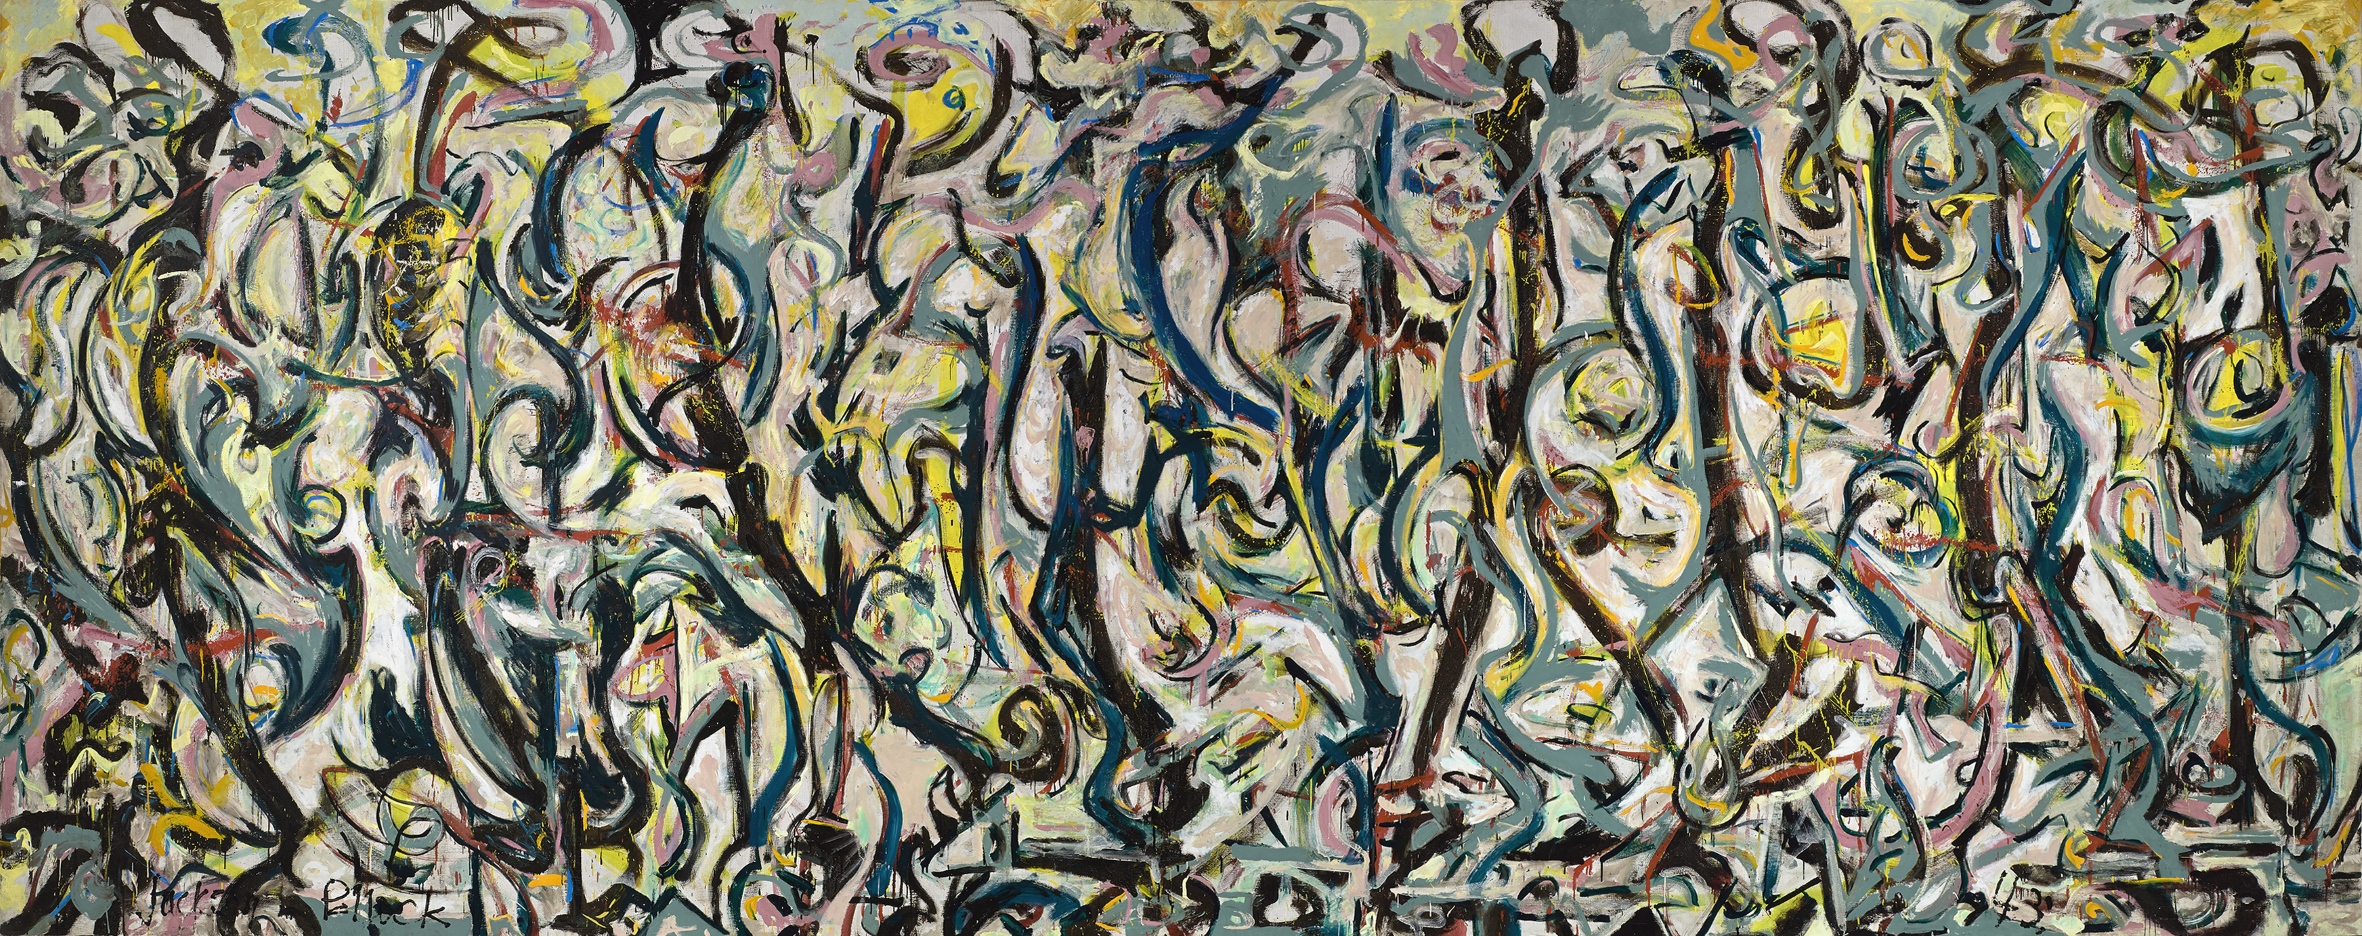 La gran obra de Jackson Pollock llega a España